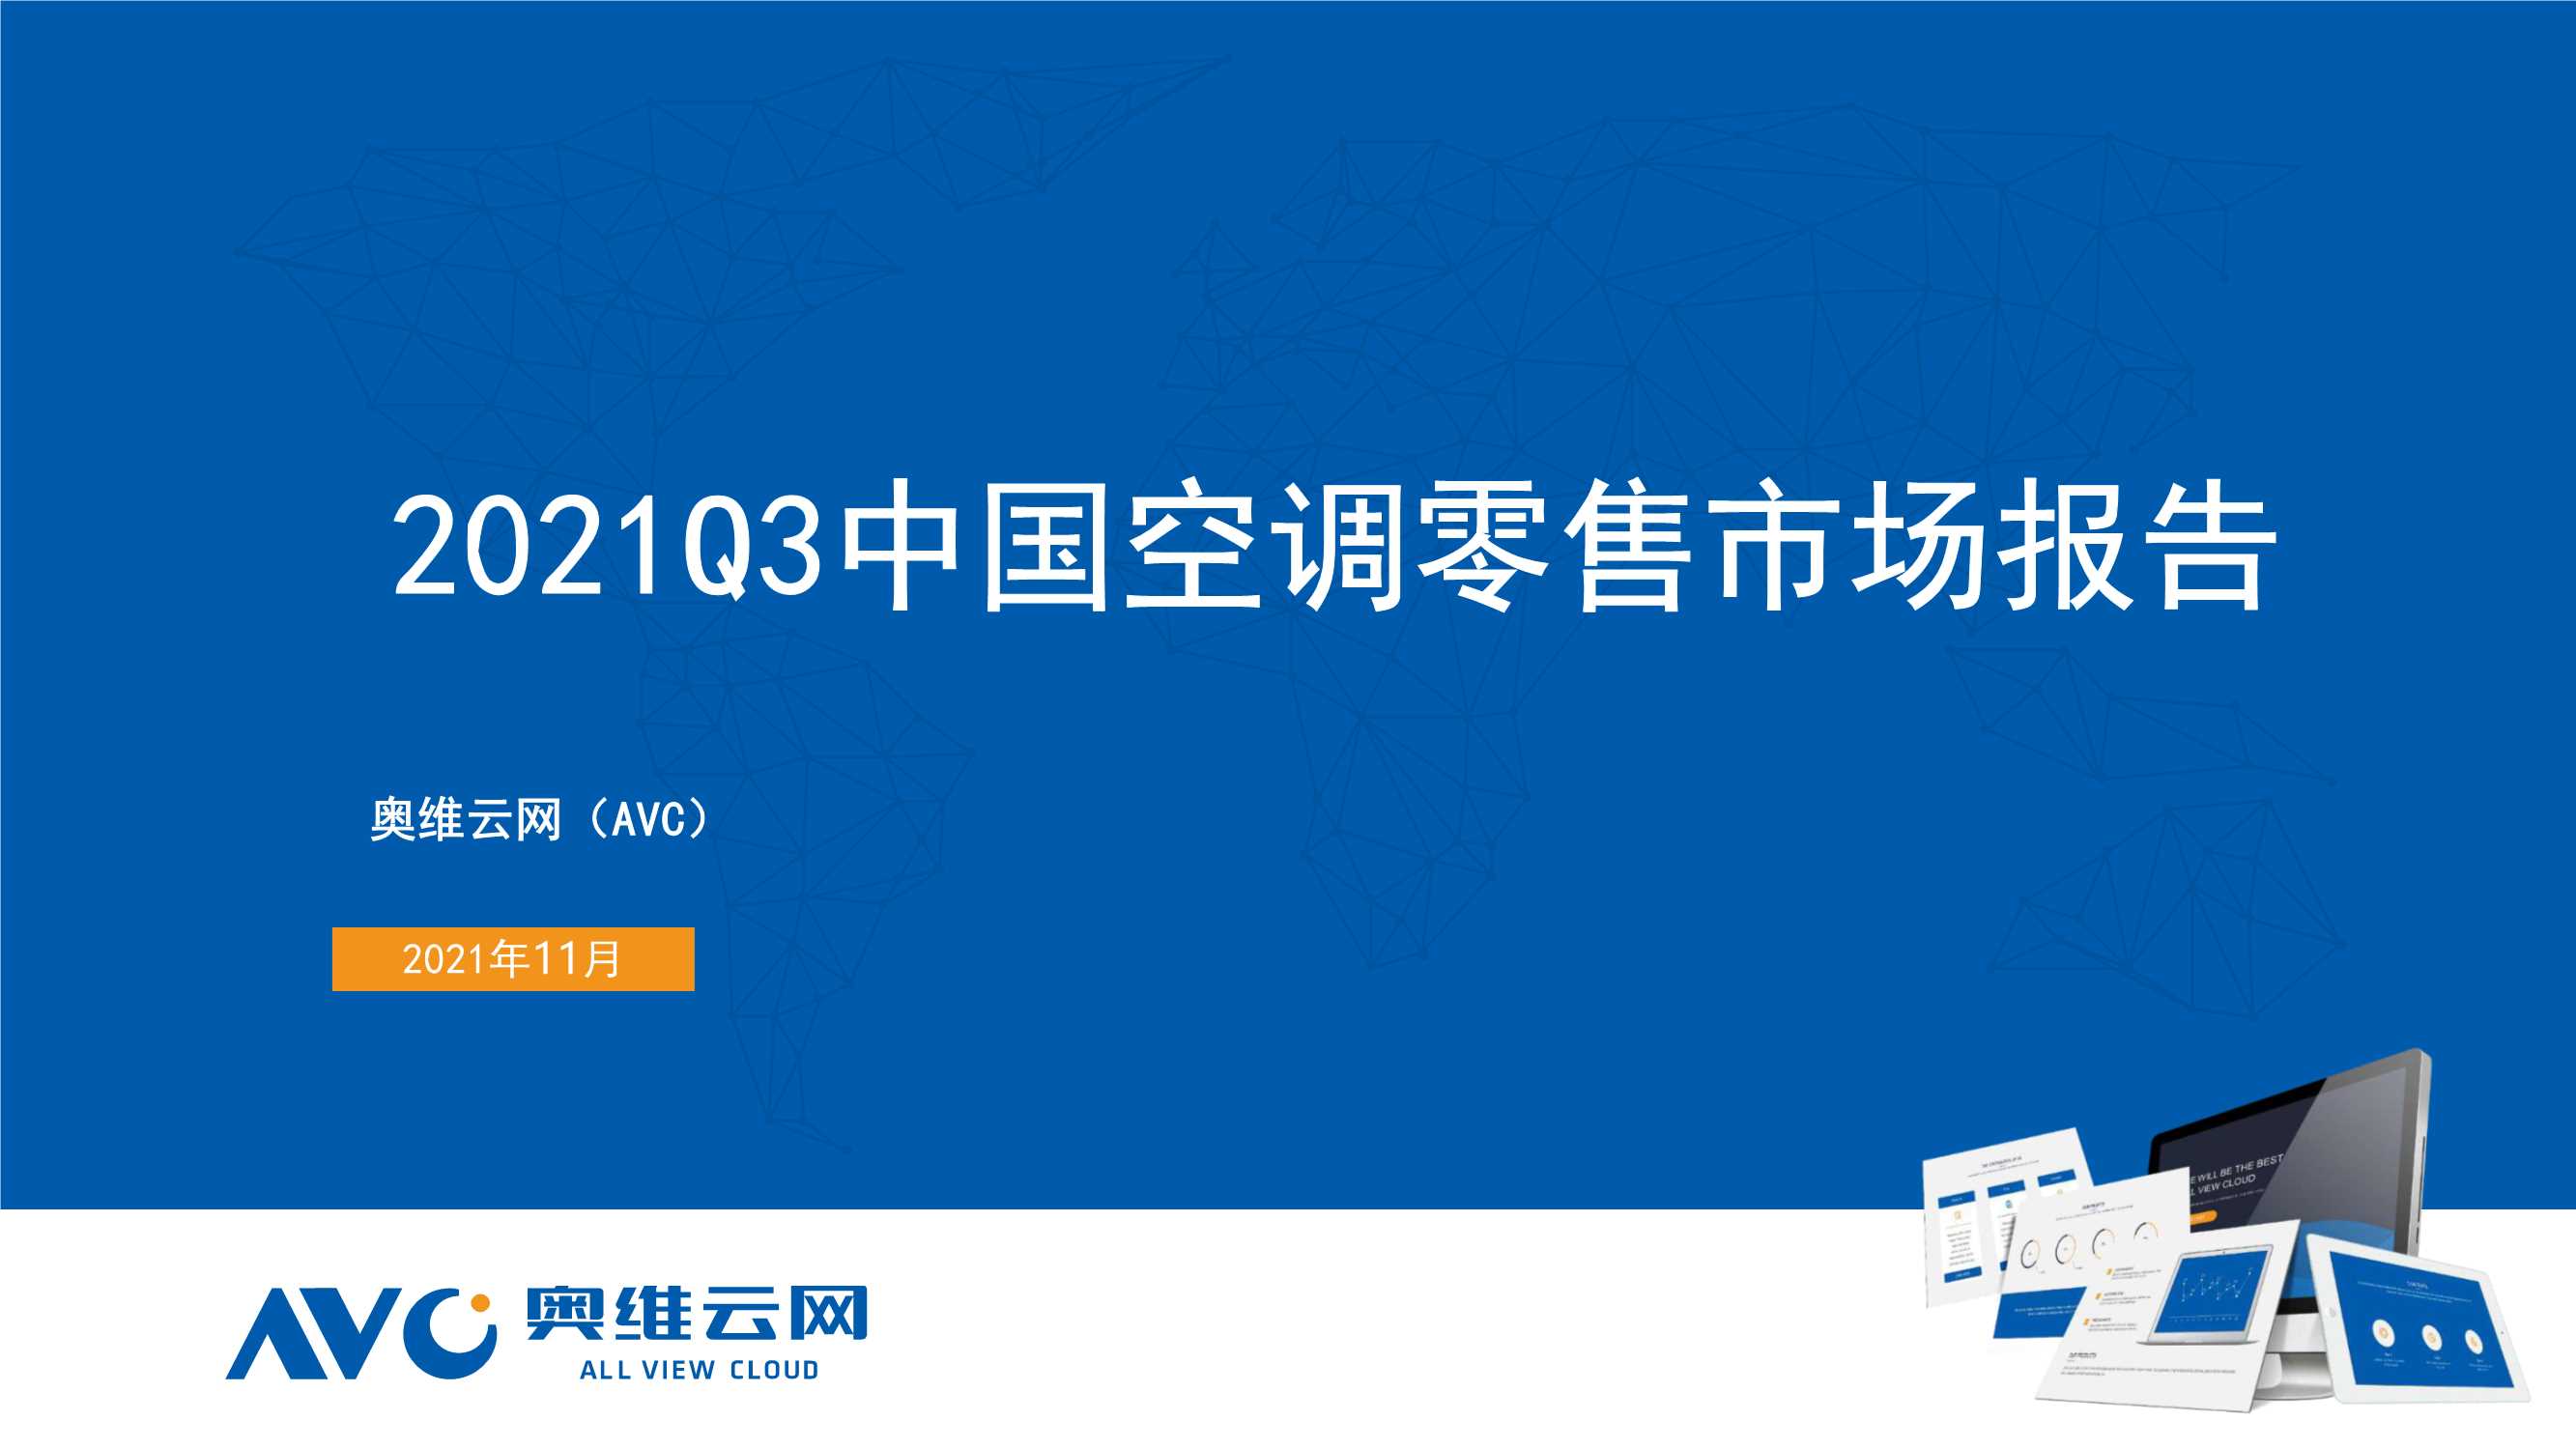 奥维云网-2021Q3中国空调零售市场报告-2021.11-29页